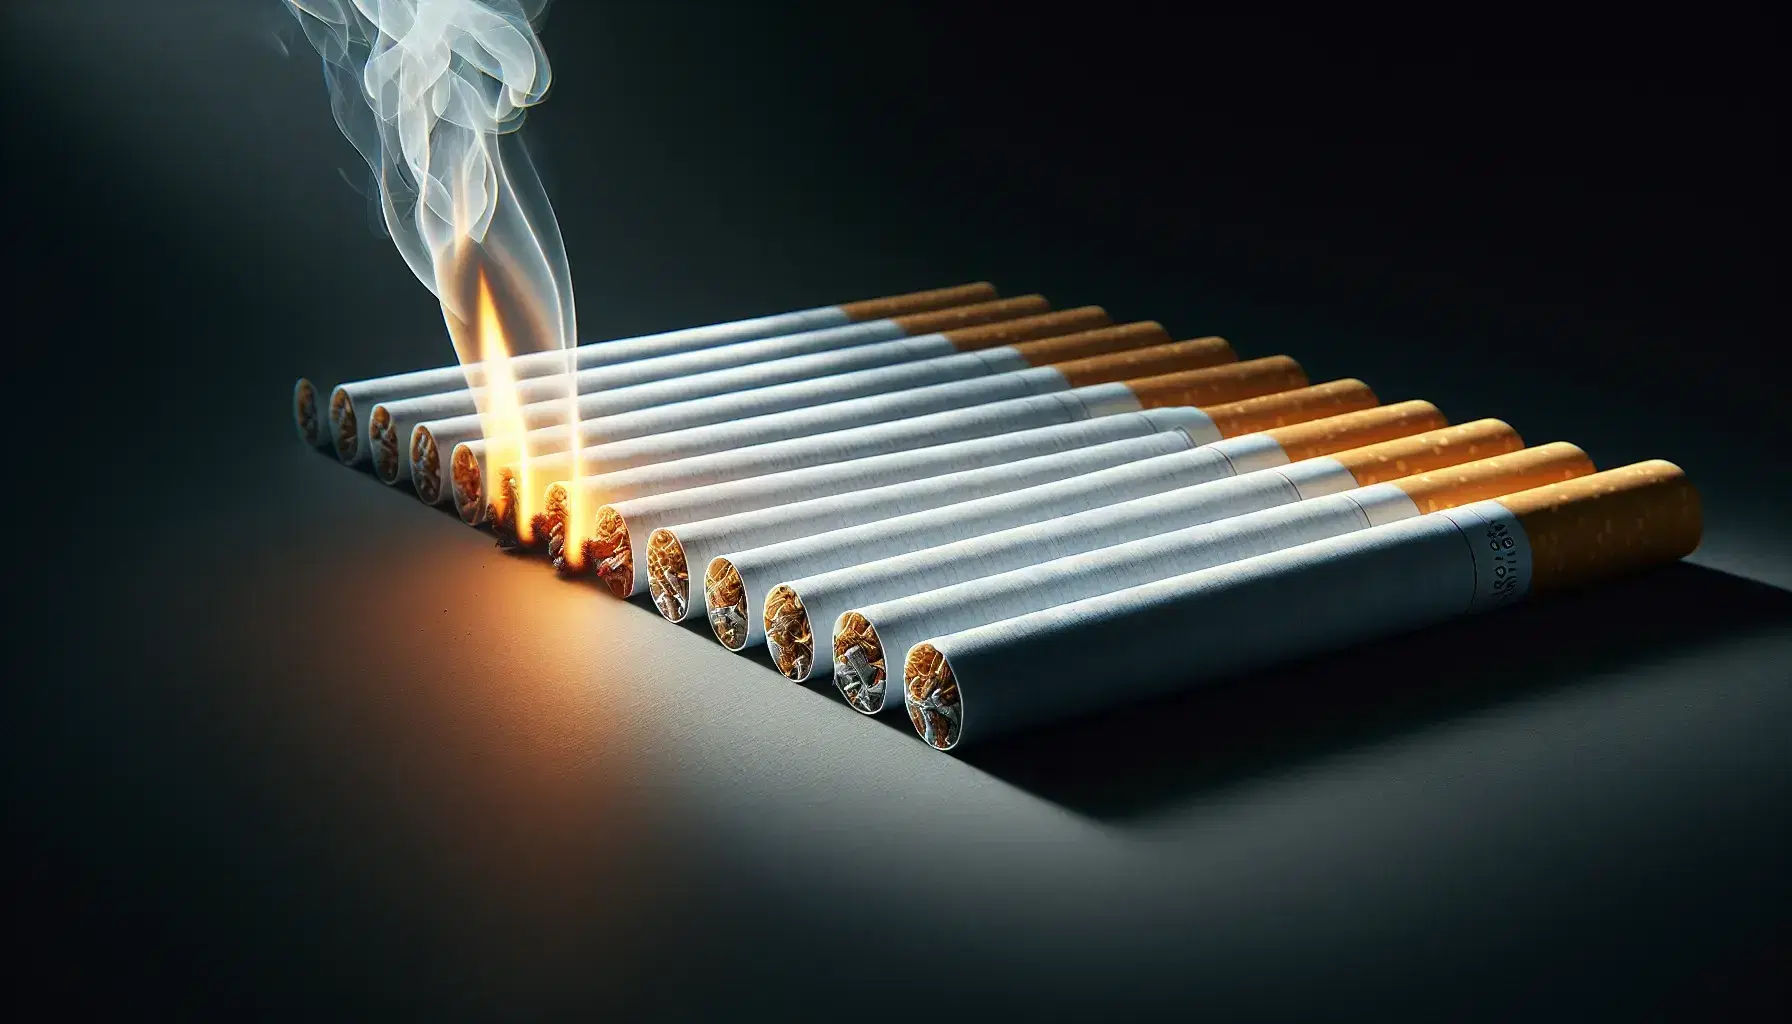 Primer plano de cigarrillos en paralelo con uno encendido y humo ascendente sobre fondo oscuro, resaltando la punta naranja brillante y la textura irregular del cigarrillo activo.